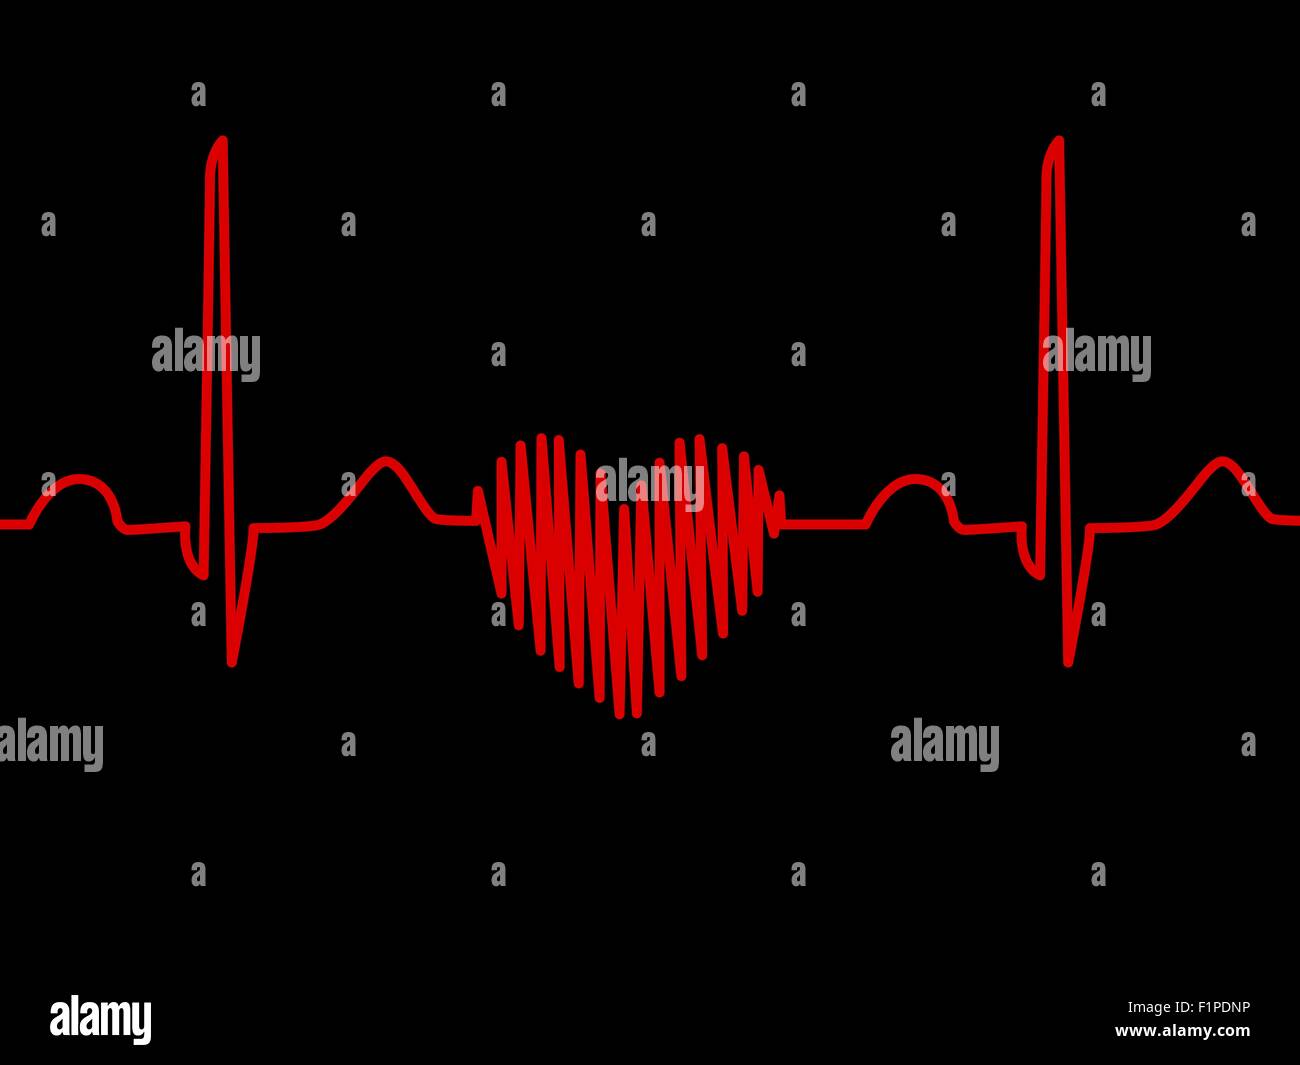 Computer Grafik einer herzförmigen Elektrokardiogramm (EKG)-Ablaufverfolgung. Eine EKG misst die elektrische Aktivität des Herzens. Stockfoto